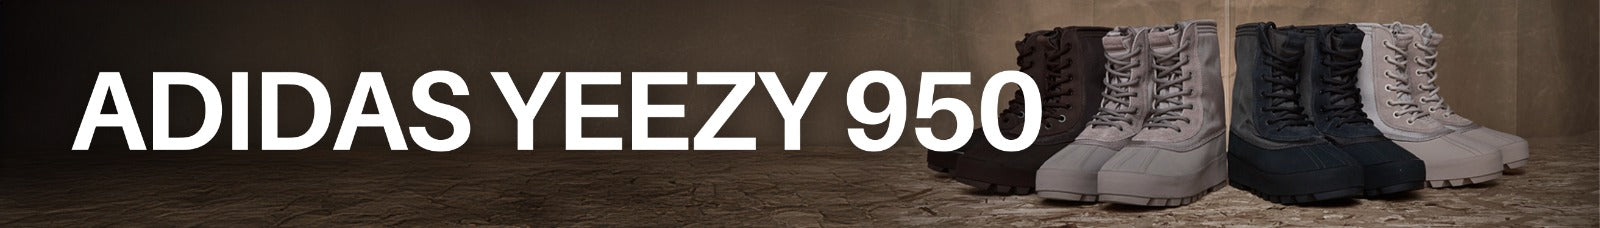 Adidas Yeezy 950